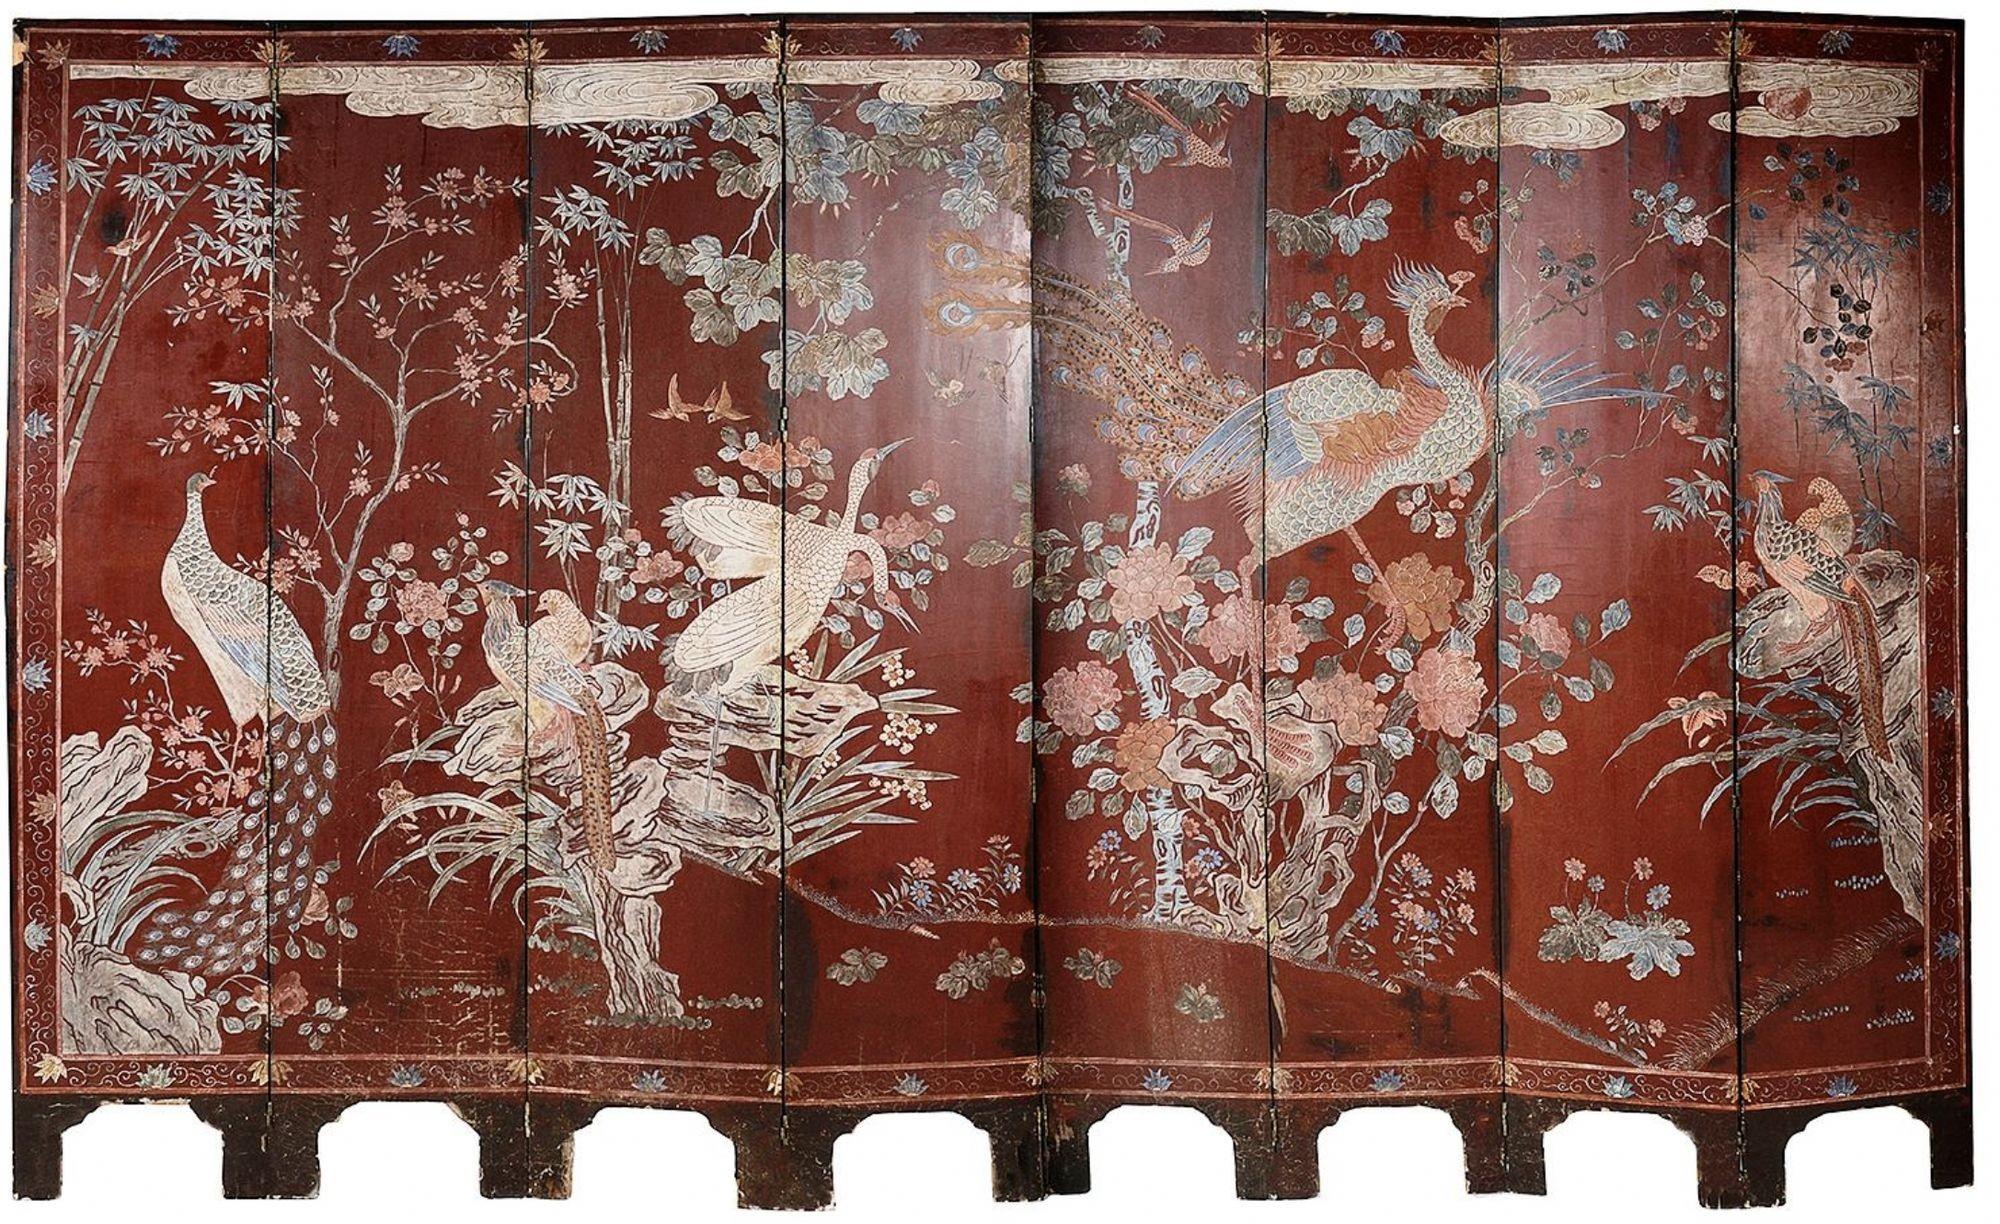 Ein sehr beeindruckender, achtfach gefalteter Paravent aus chinesischem Coromandel-Lack aus dem frühen 19. Jahrhundert, der Höflinge und Bedienstete in Pagodengebäuden und Gärten darstellt, umgeben von Blumentöpfen, Vasen und Gefäßen. Die Rückseite